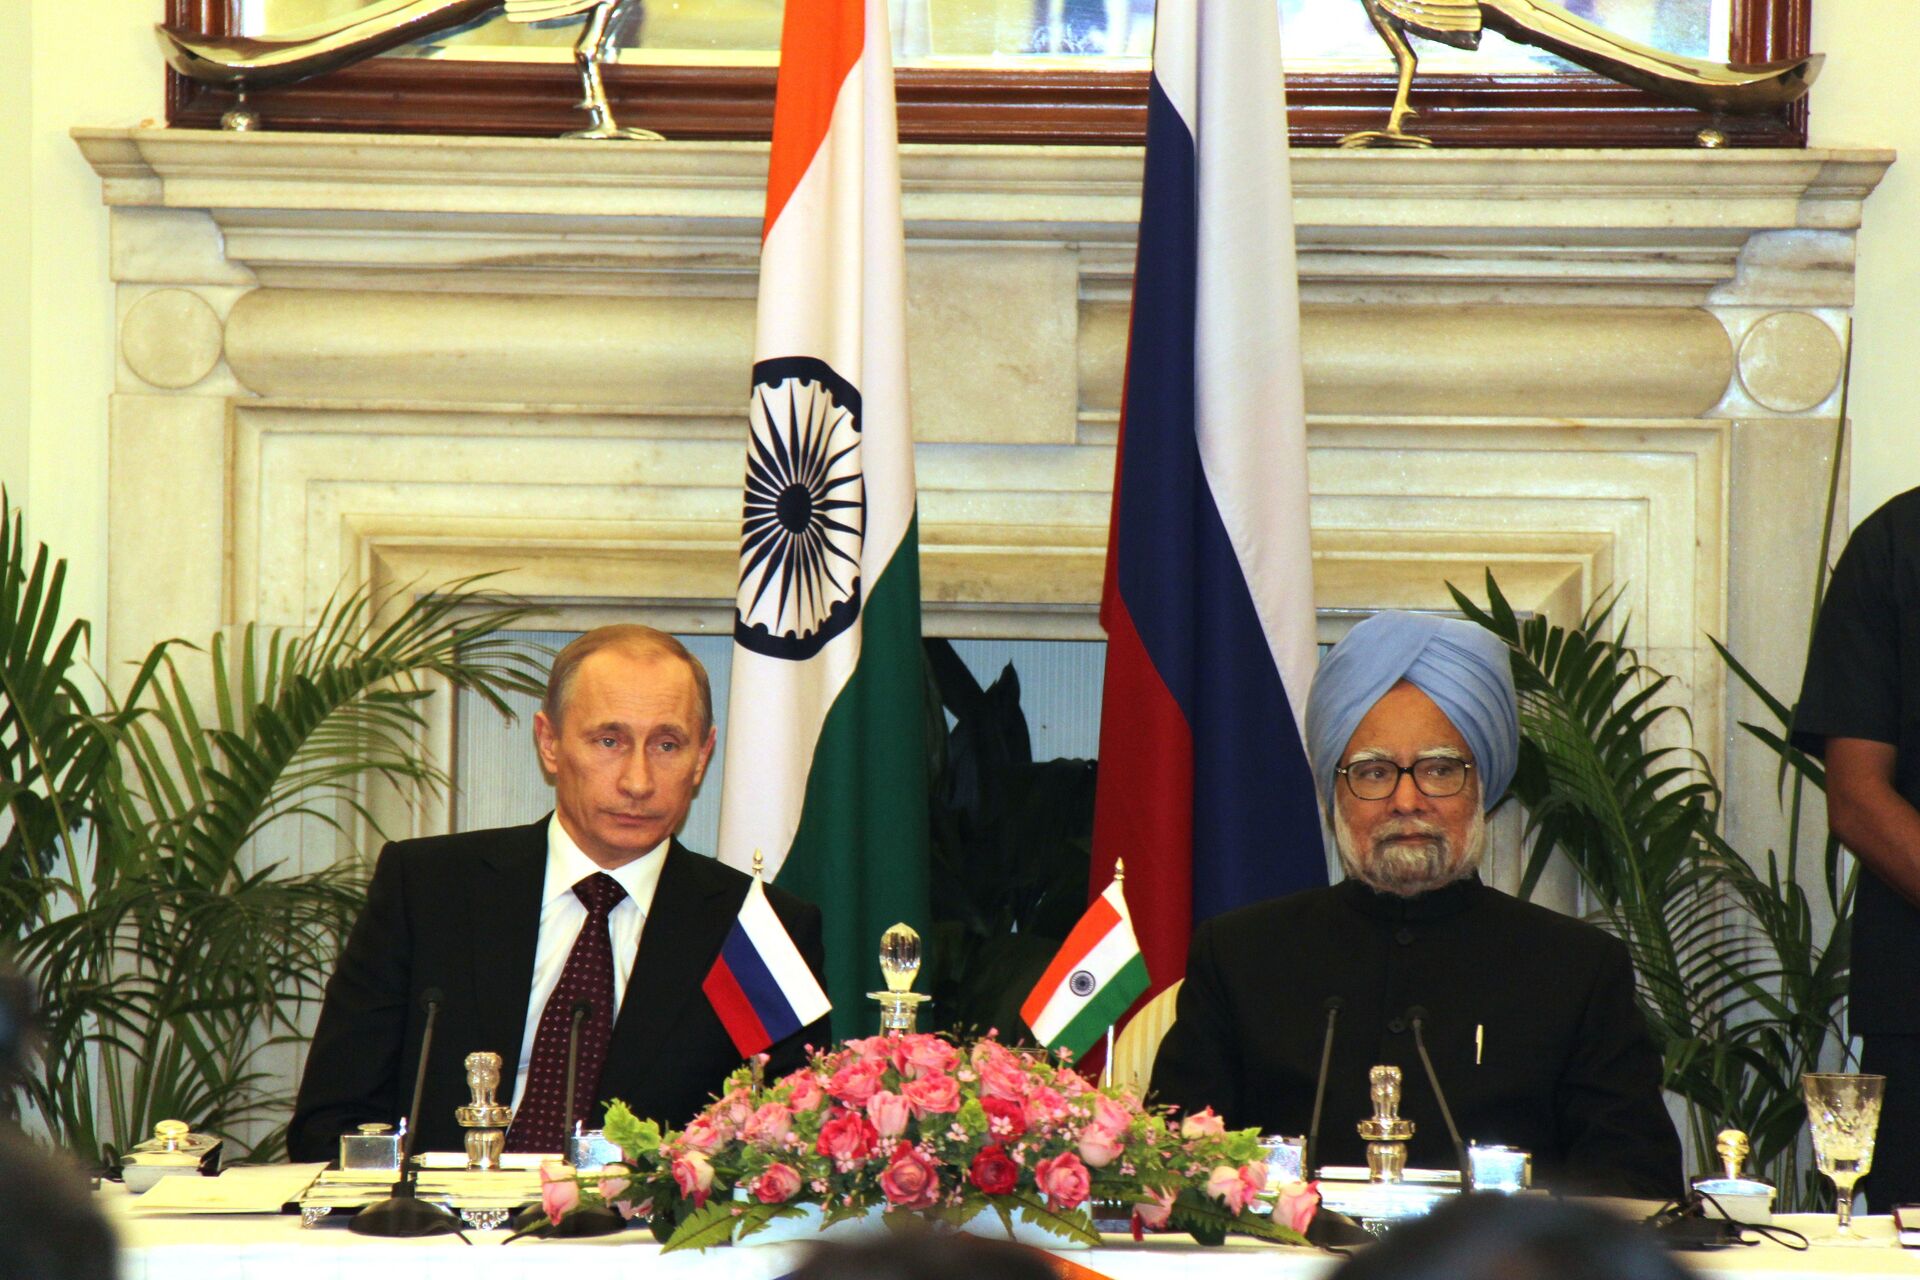 Визит премьер министра. Визит Путина в Индию 2007. Визит Путина в Иран в 2007. Визит Путина в Индию.